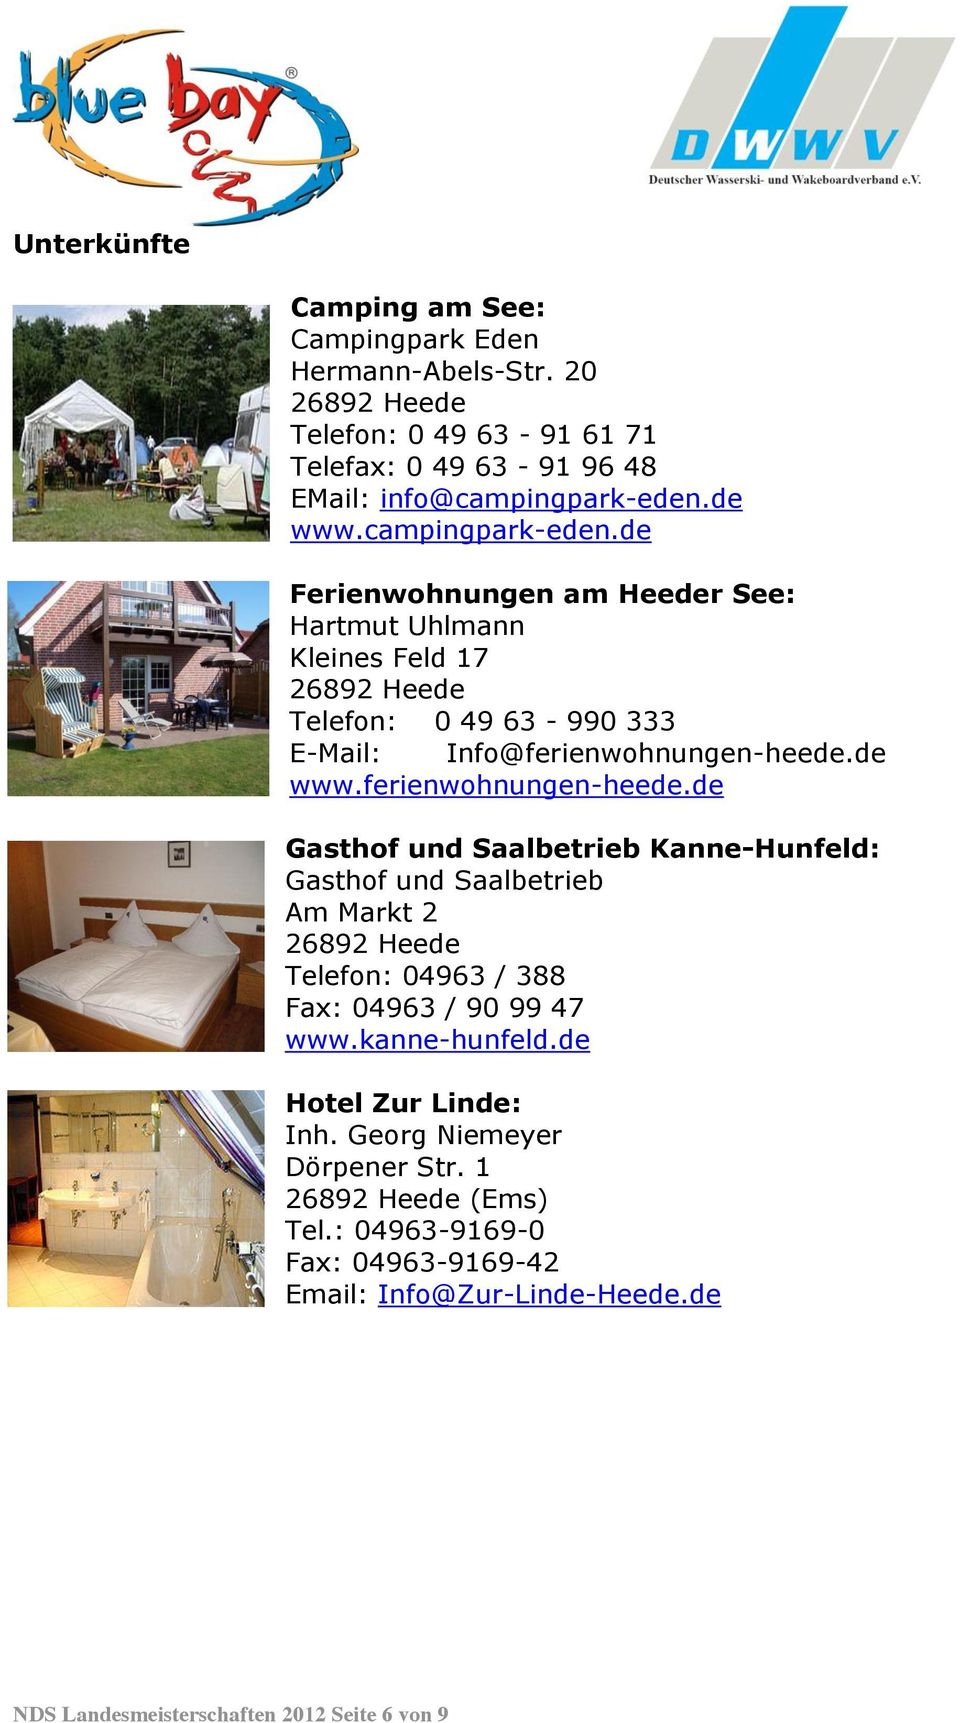 ferienwohnungen-heede.de Gasthof und Saalbetrieb Kanne-Hunfeld: Gasthof und Saalbetrieb Am Markt 2 26892 Heede Telefon: 04963 / 388 Fax: 04963 / 90 99 47 www.kanne-hunfeld.